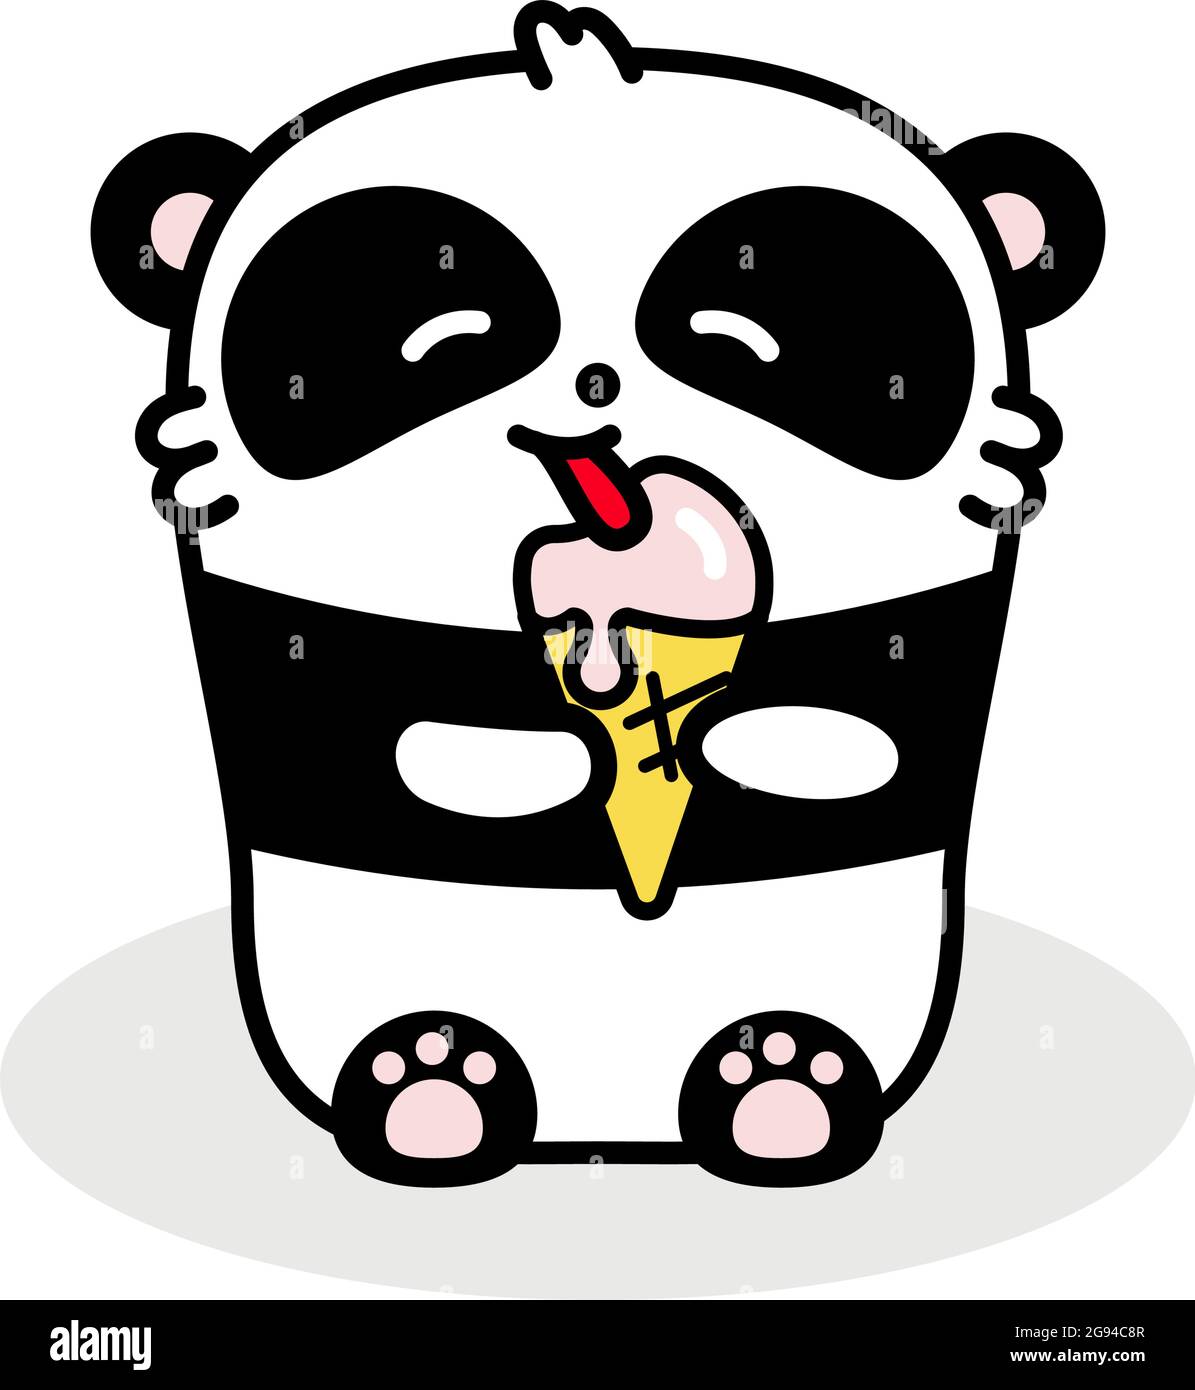 Il panda poco carino mangia il gelato. Immagine vettoriale piatta in stile lineare su sfondo bianco. Orso di Kawai Illustrazione Vettoriale